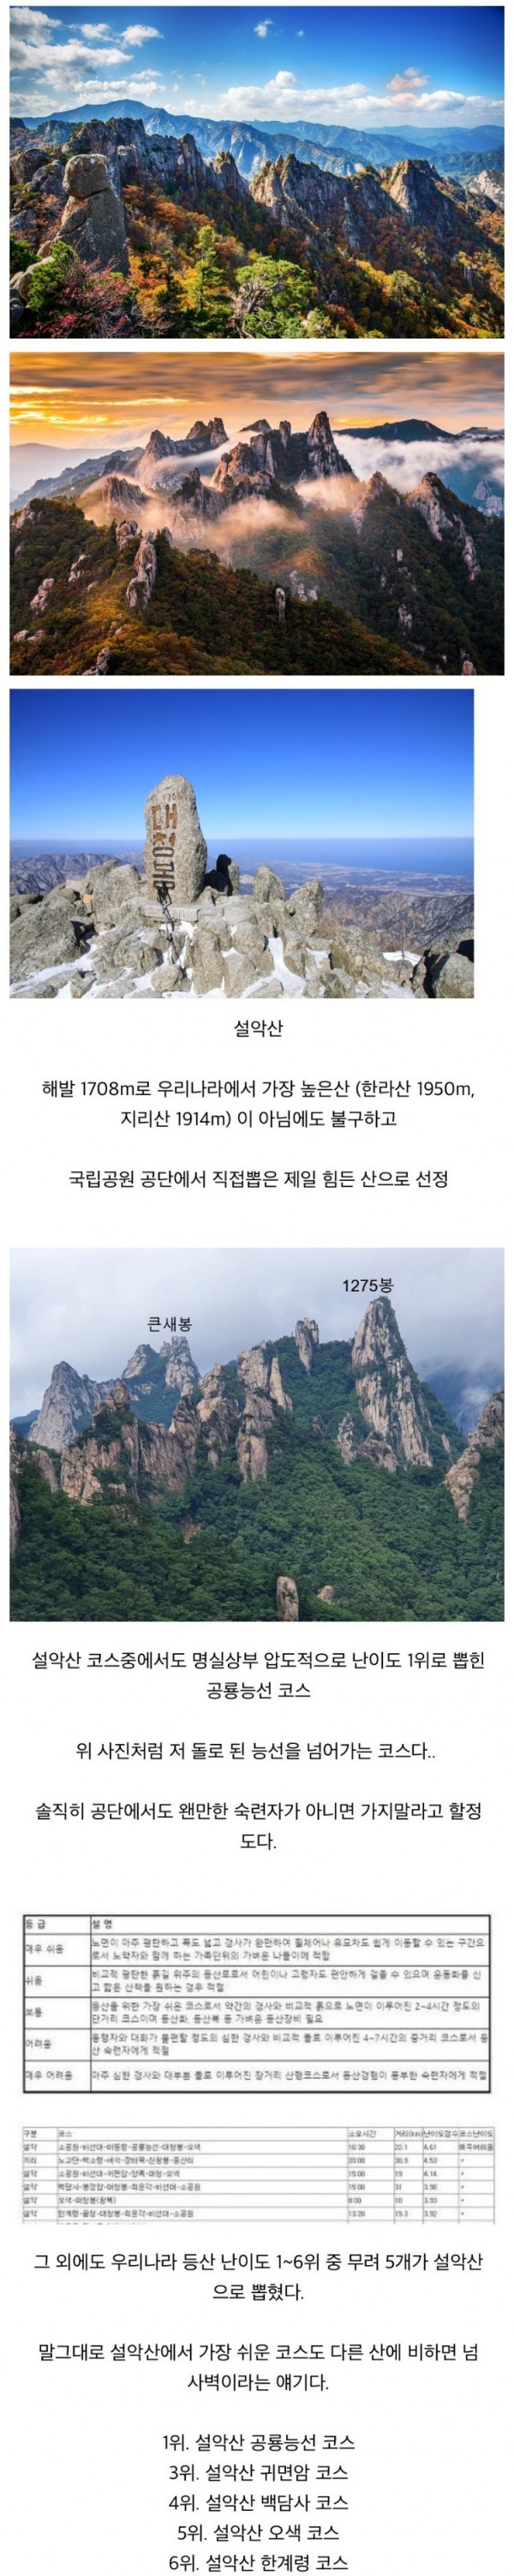 한국에서 제일 힘든 등산 코스